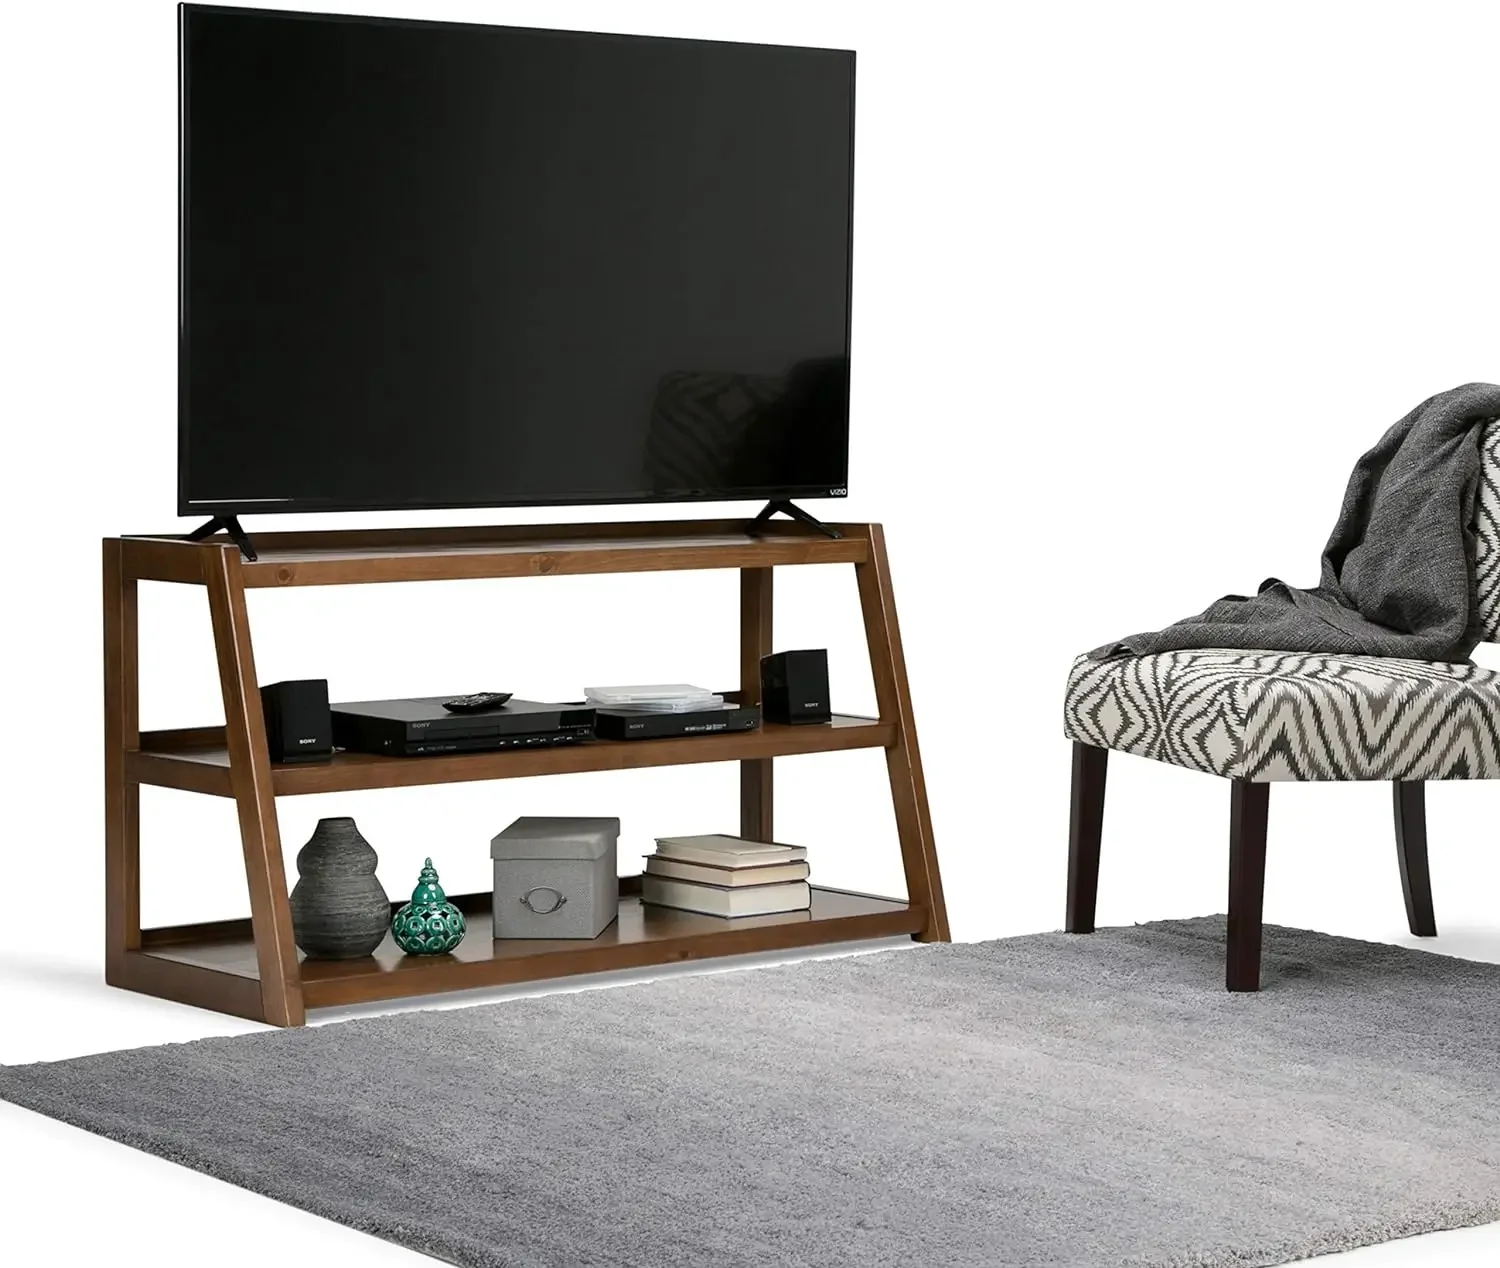 

Sawhorse твердая древесина 48 дюймов широкая Современная промышленная ТВ медиа стойка в среднем седле коричневый для телевизоров до 55 дюймов